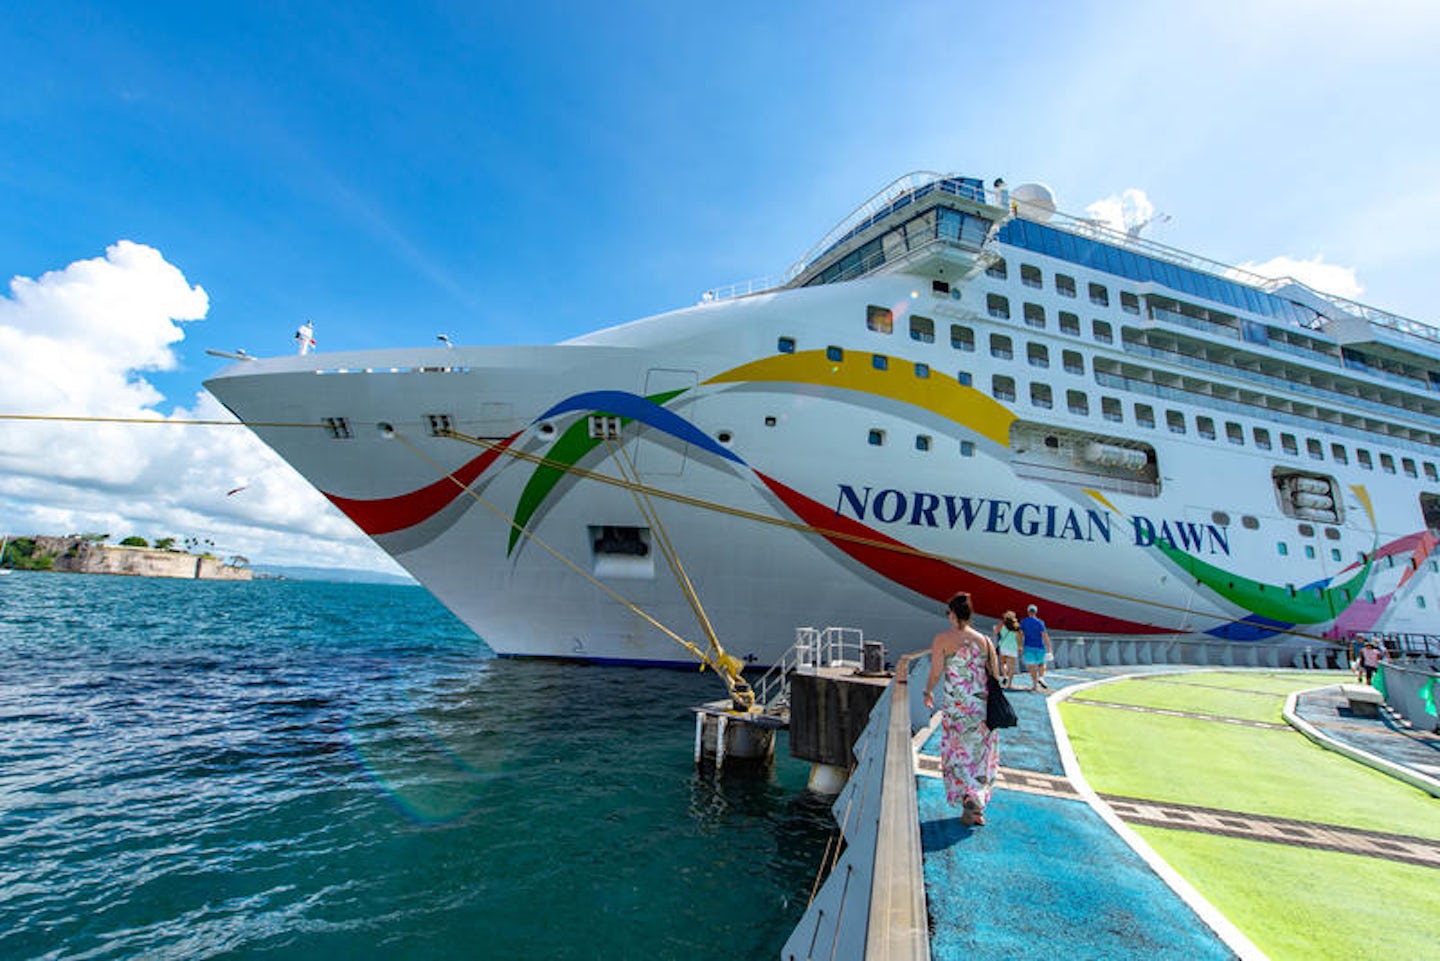 norwegian dawn cruise ship photos